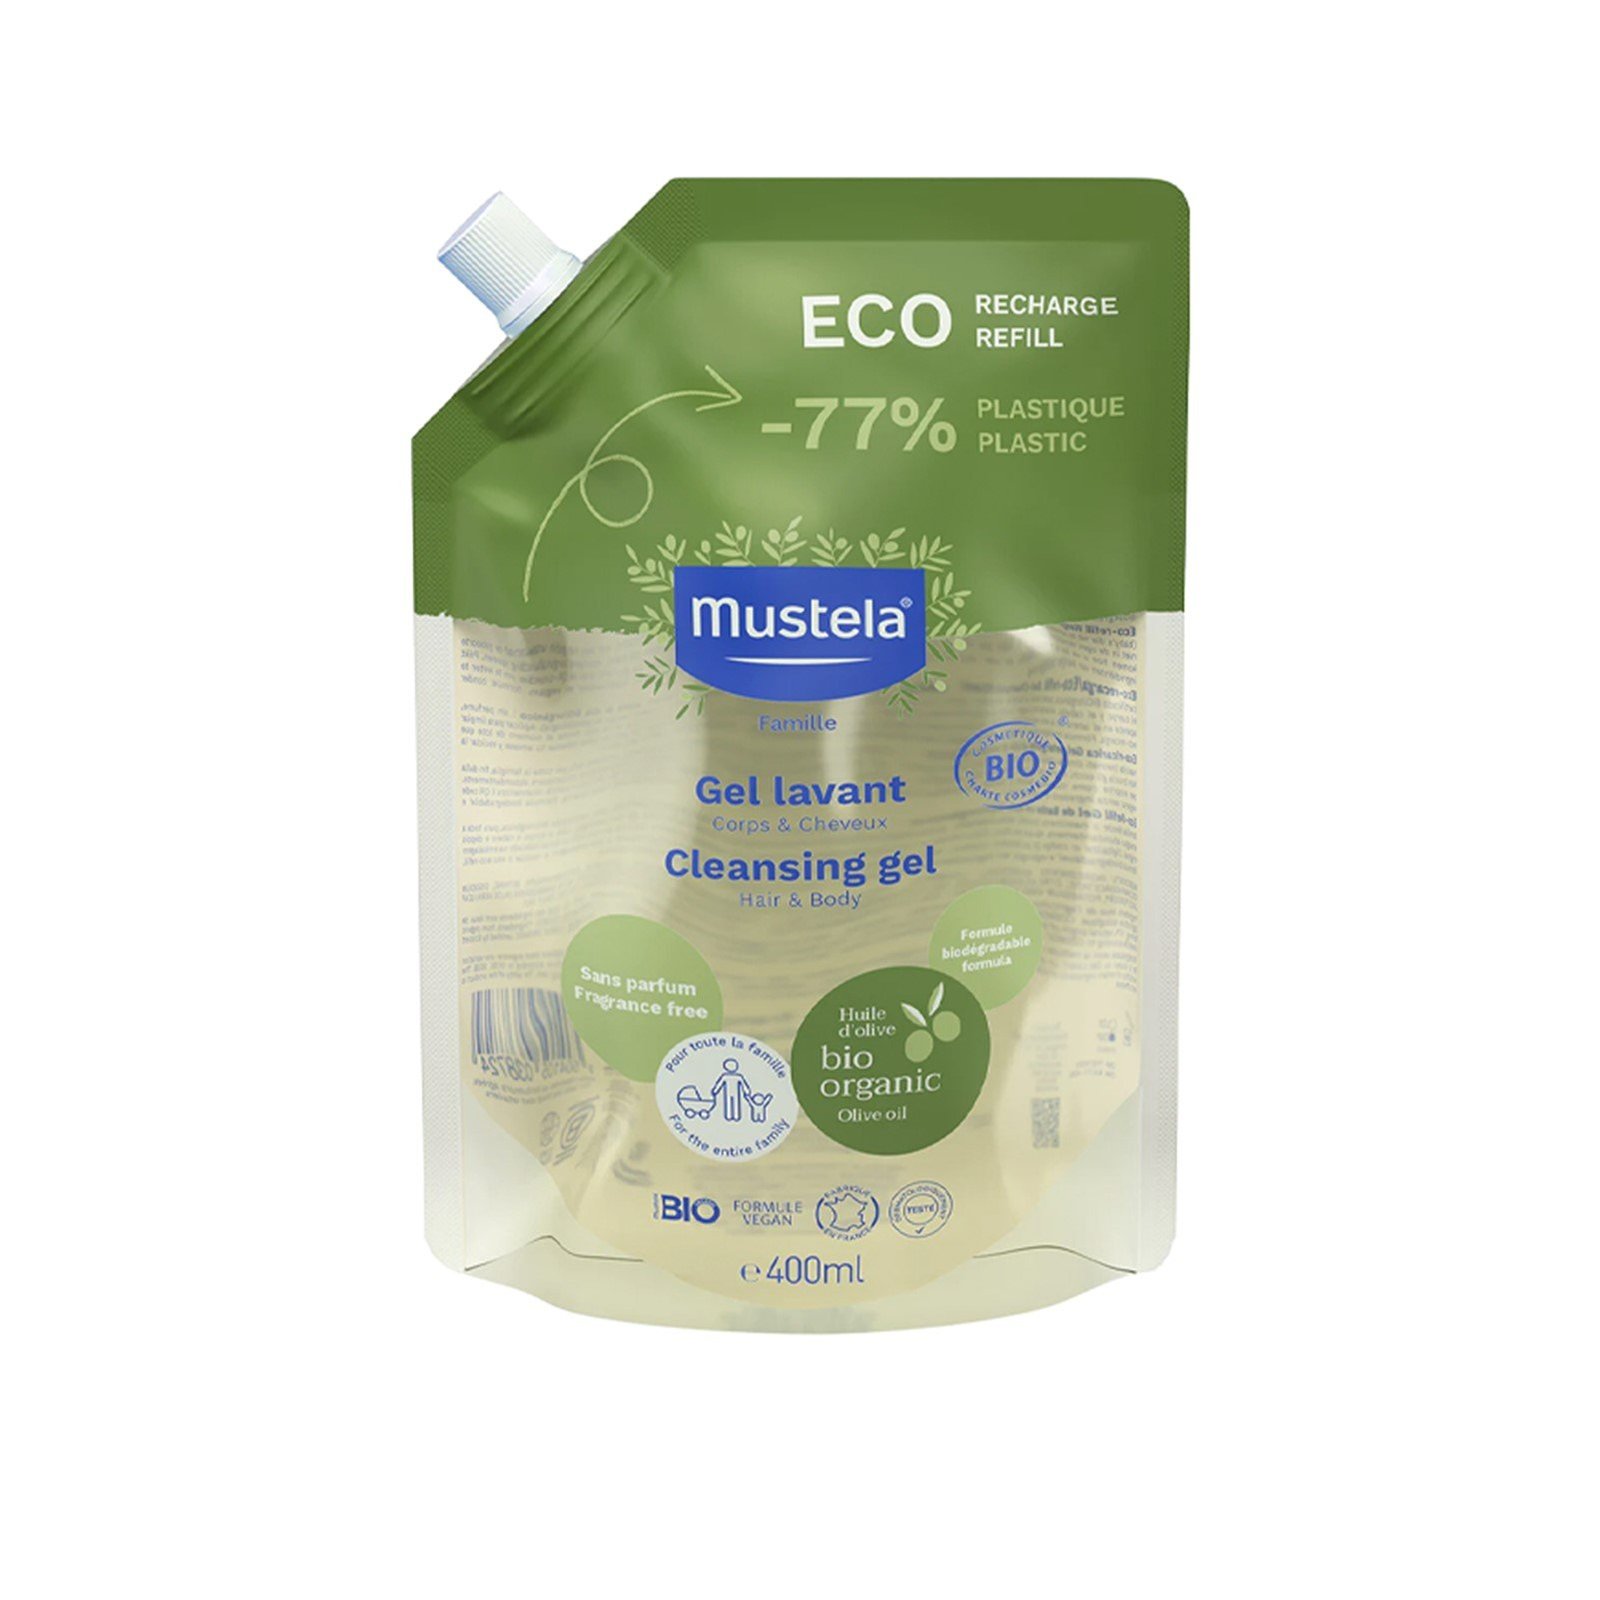 Mustela BIO Organic Cleansing Gel Fragrance-Free Eco Refill 400ml (13.53fl oz)